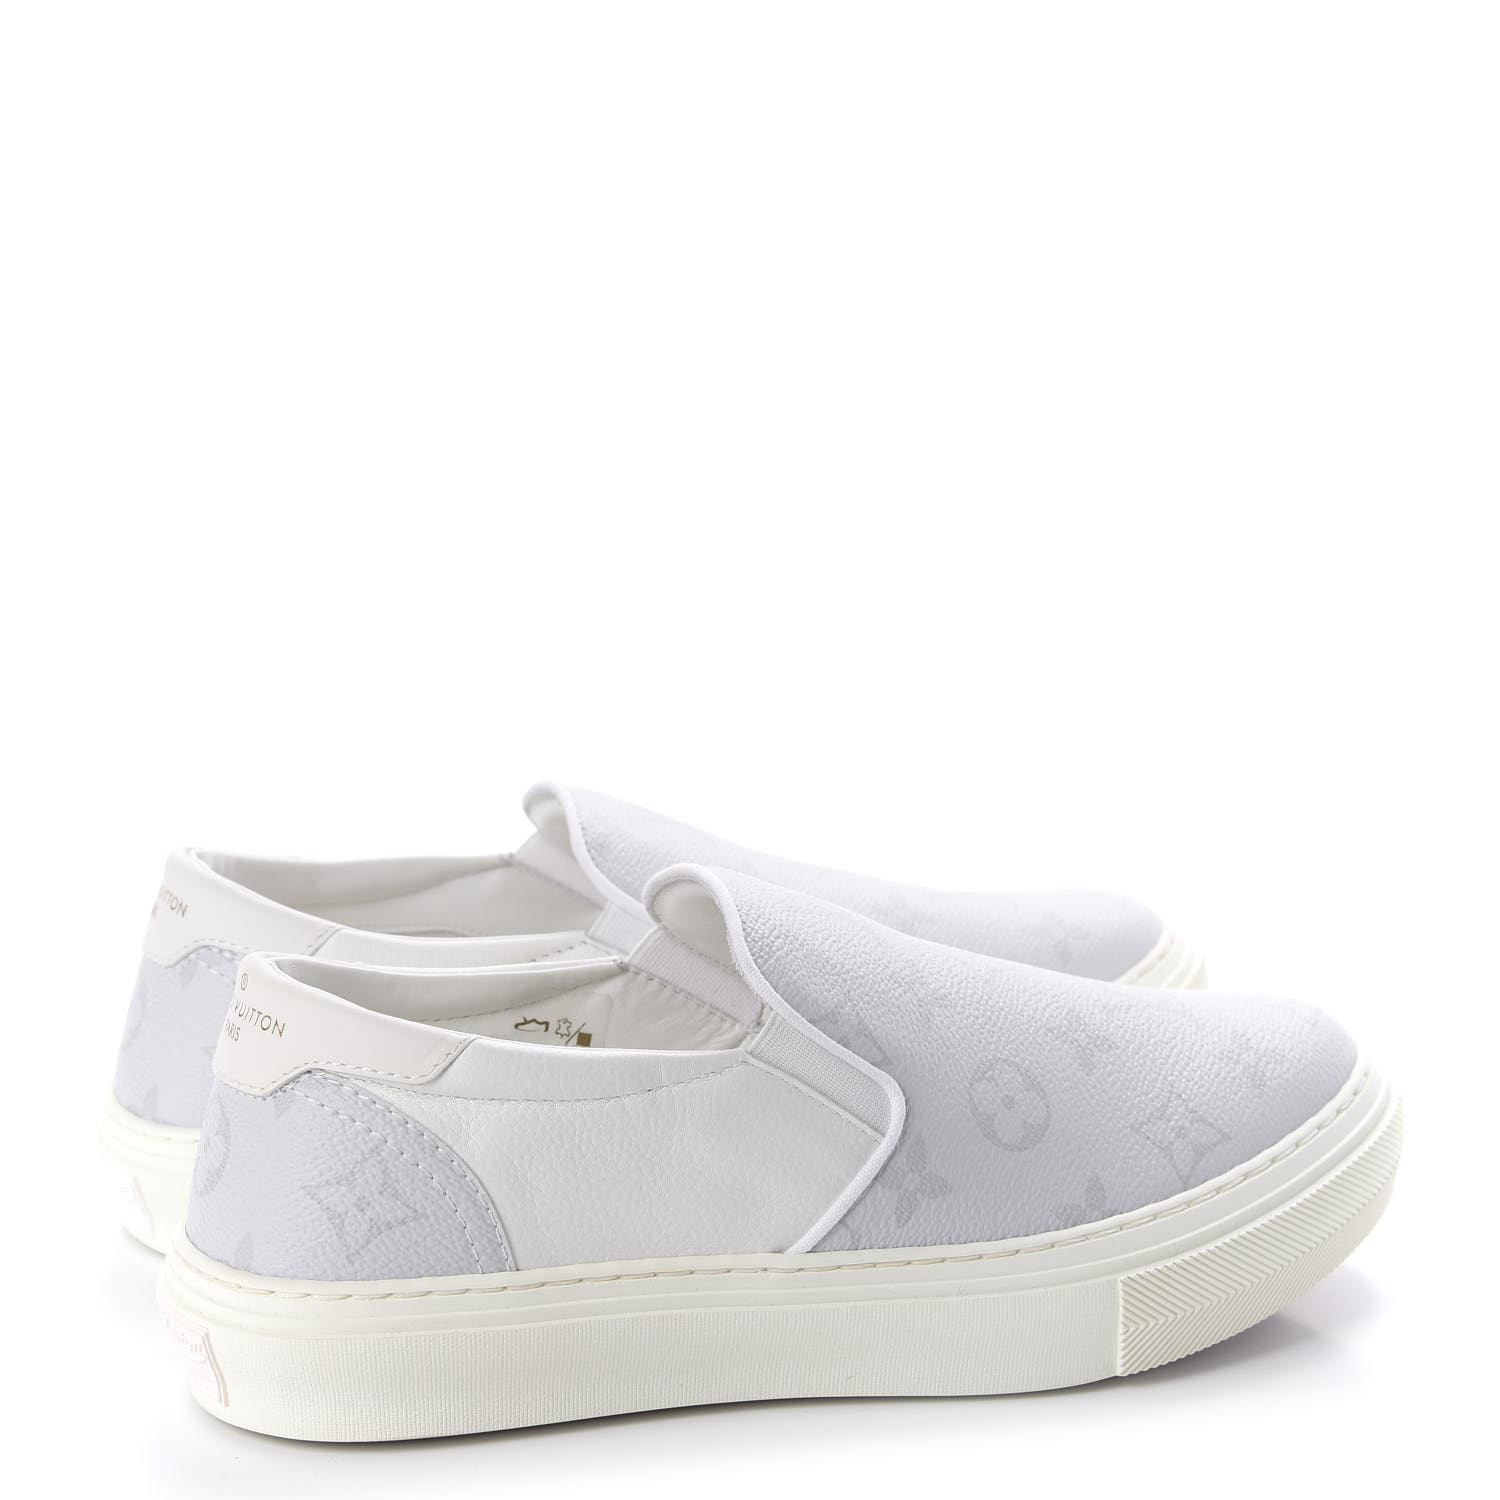 LOUIS VUITTON Monogram Trocadero Slip On Sneakers 5.5 White 624133 